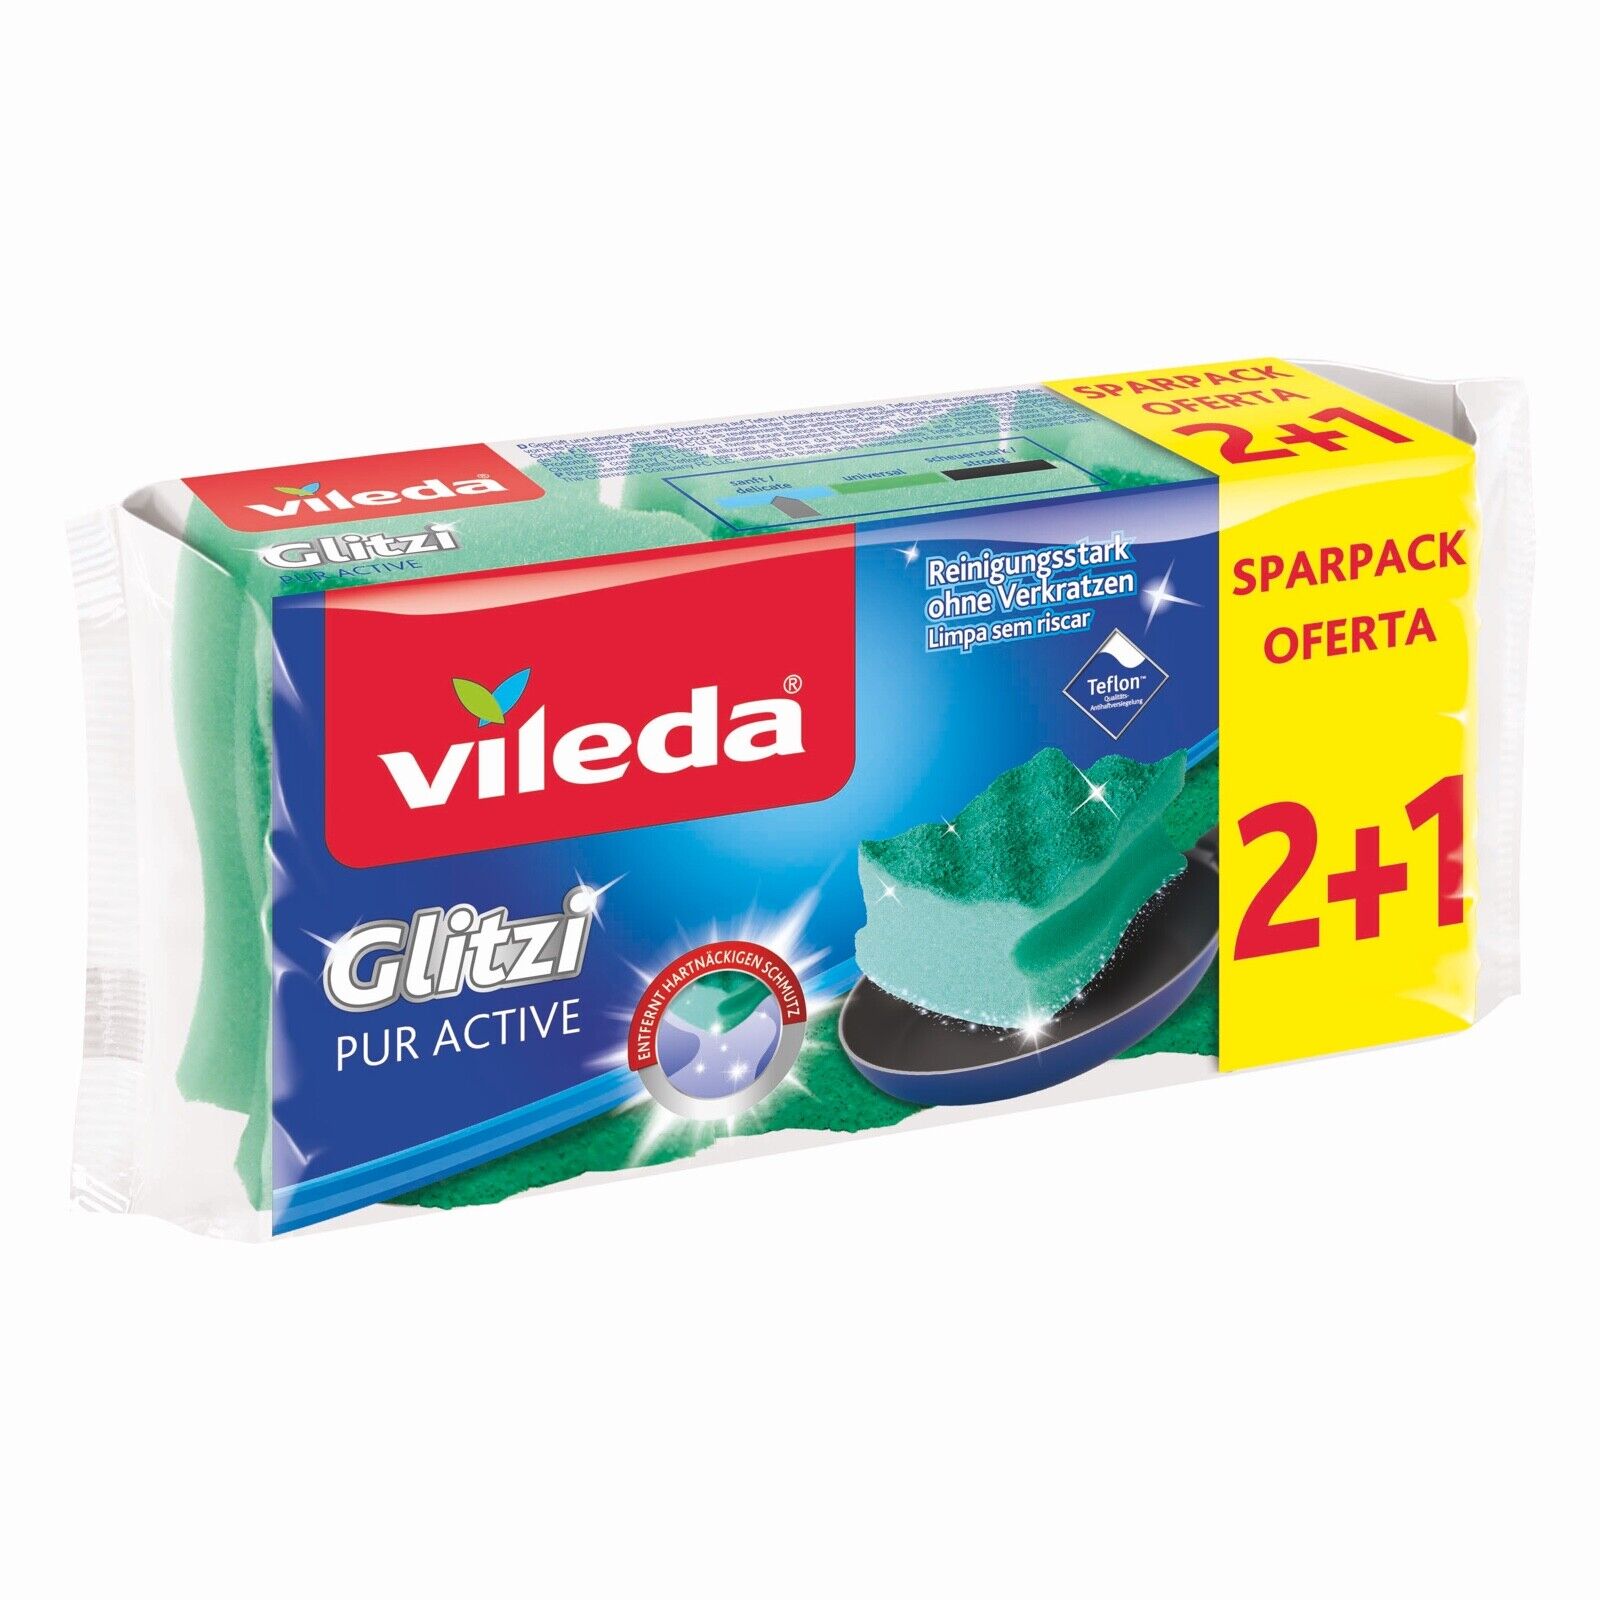 Das Bild zeigt den verpackten Vileda® Glitzi pur active Topf-Schwamm